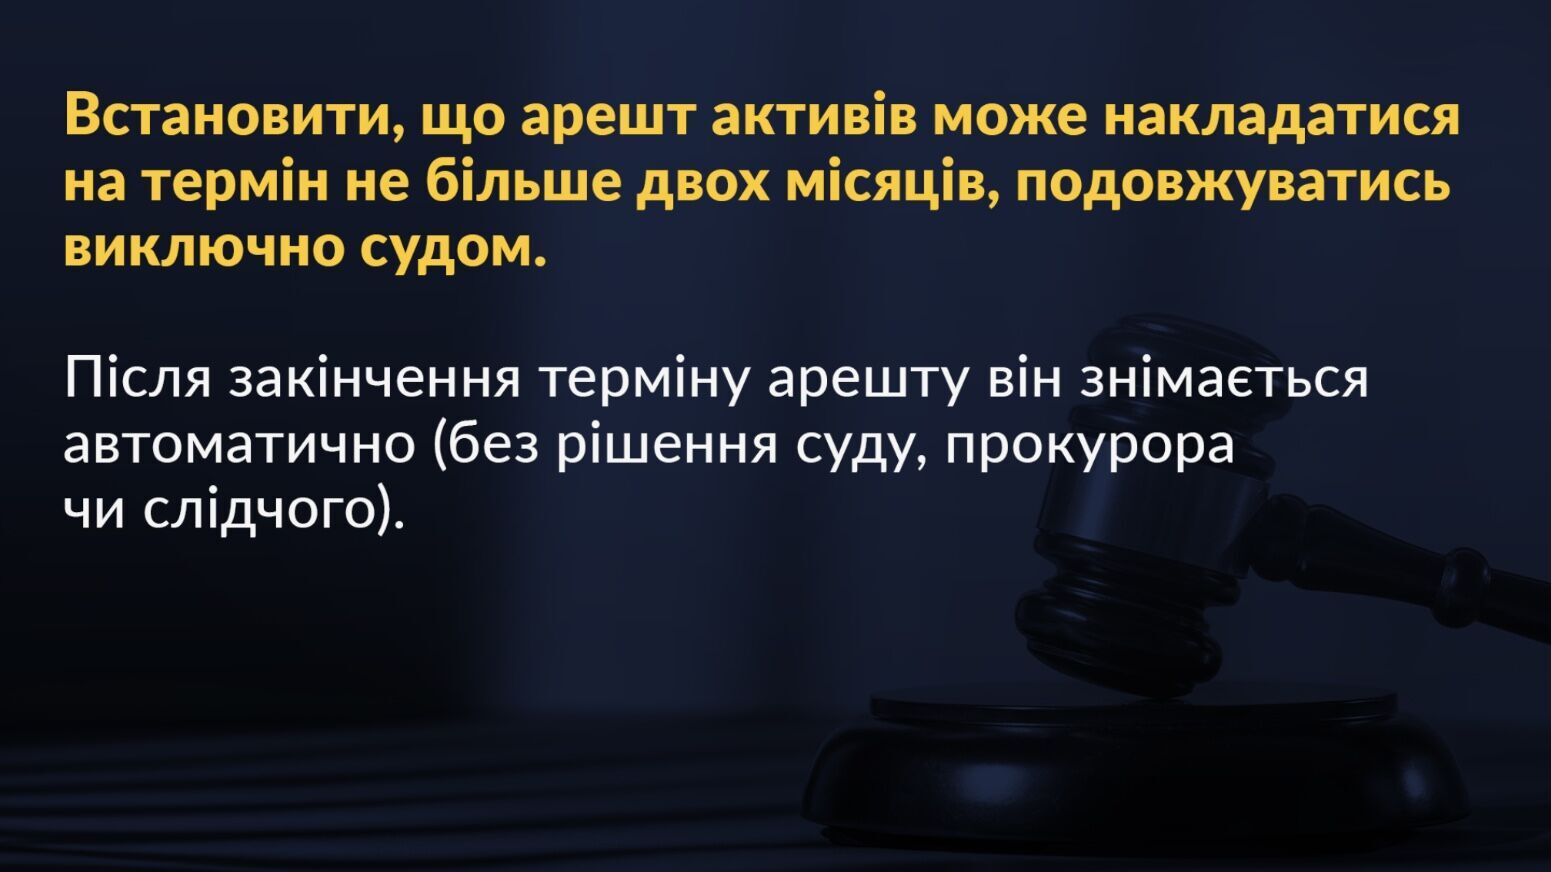 Порошенко презентував план захисту бізнесу в Україні та закликав владу до партнерства